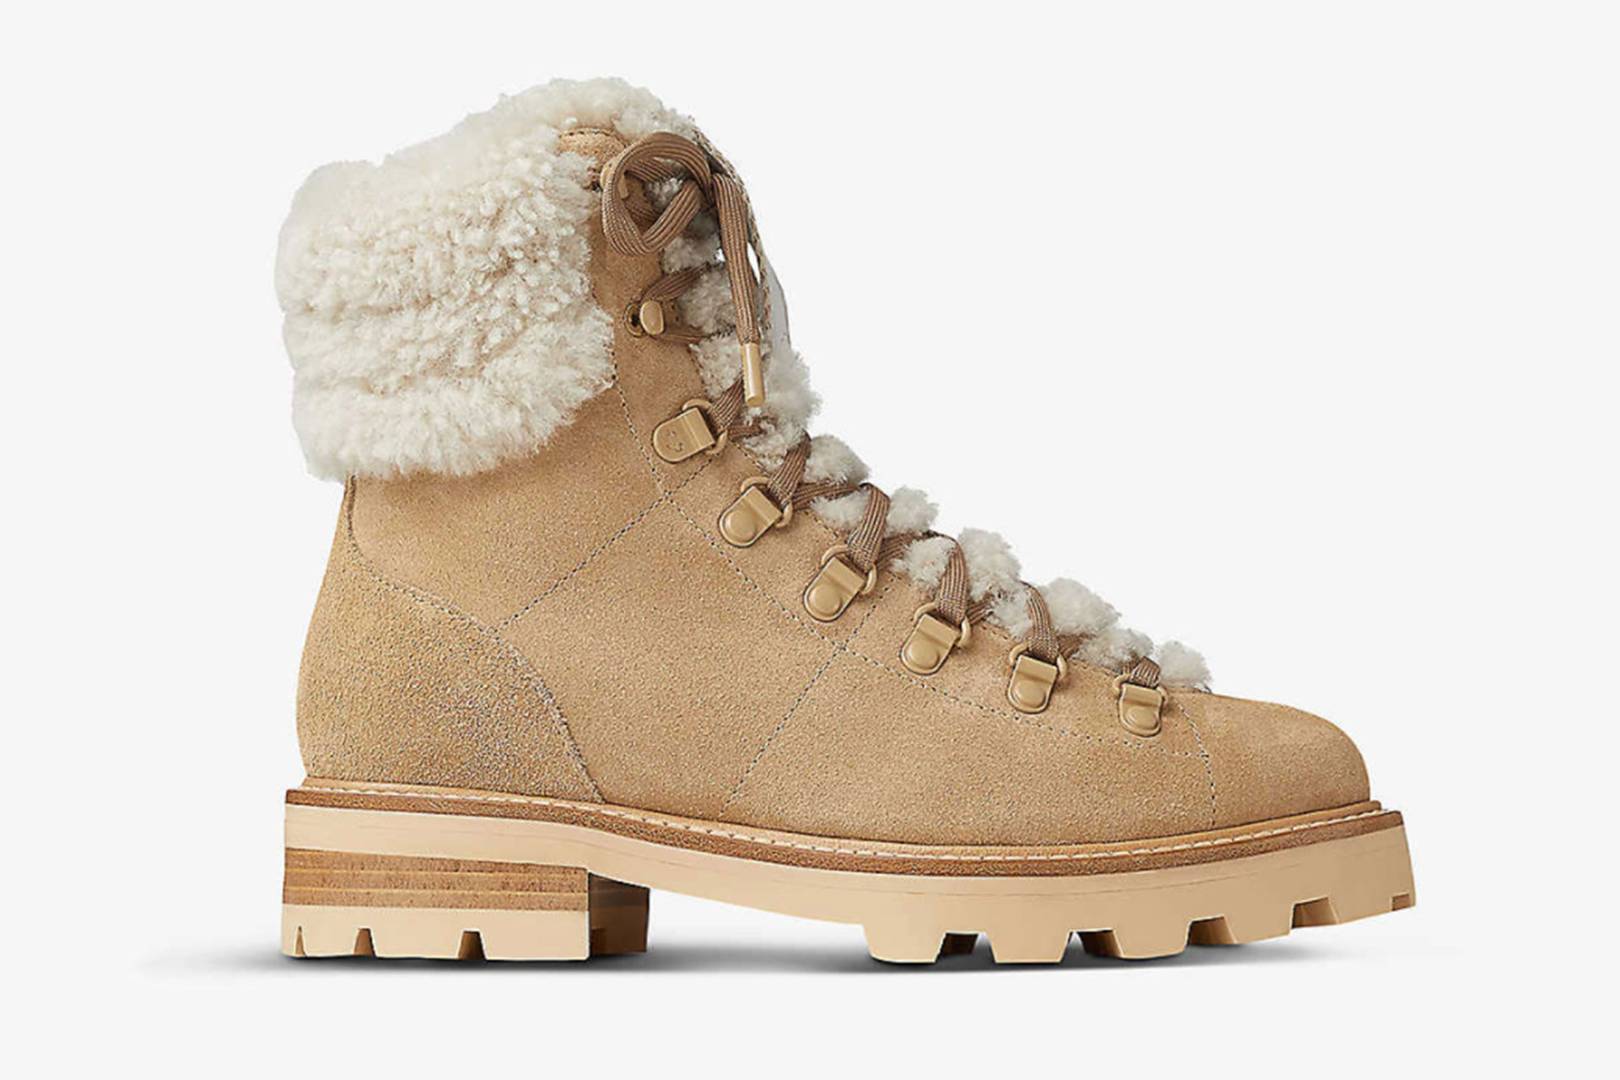 womens stylish hiking boots